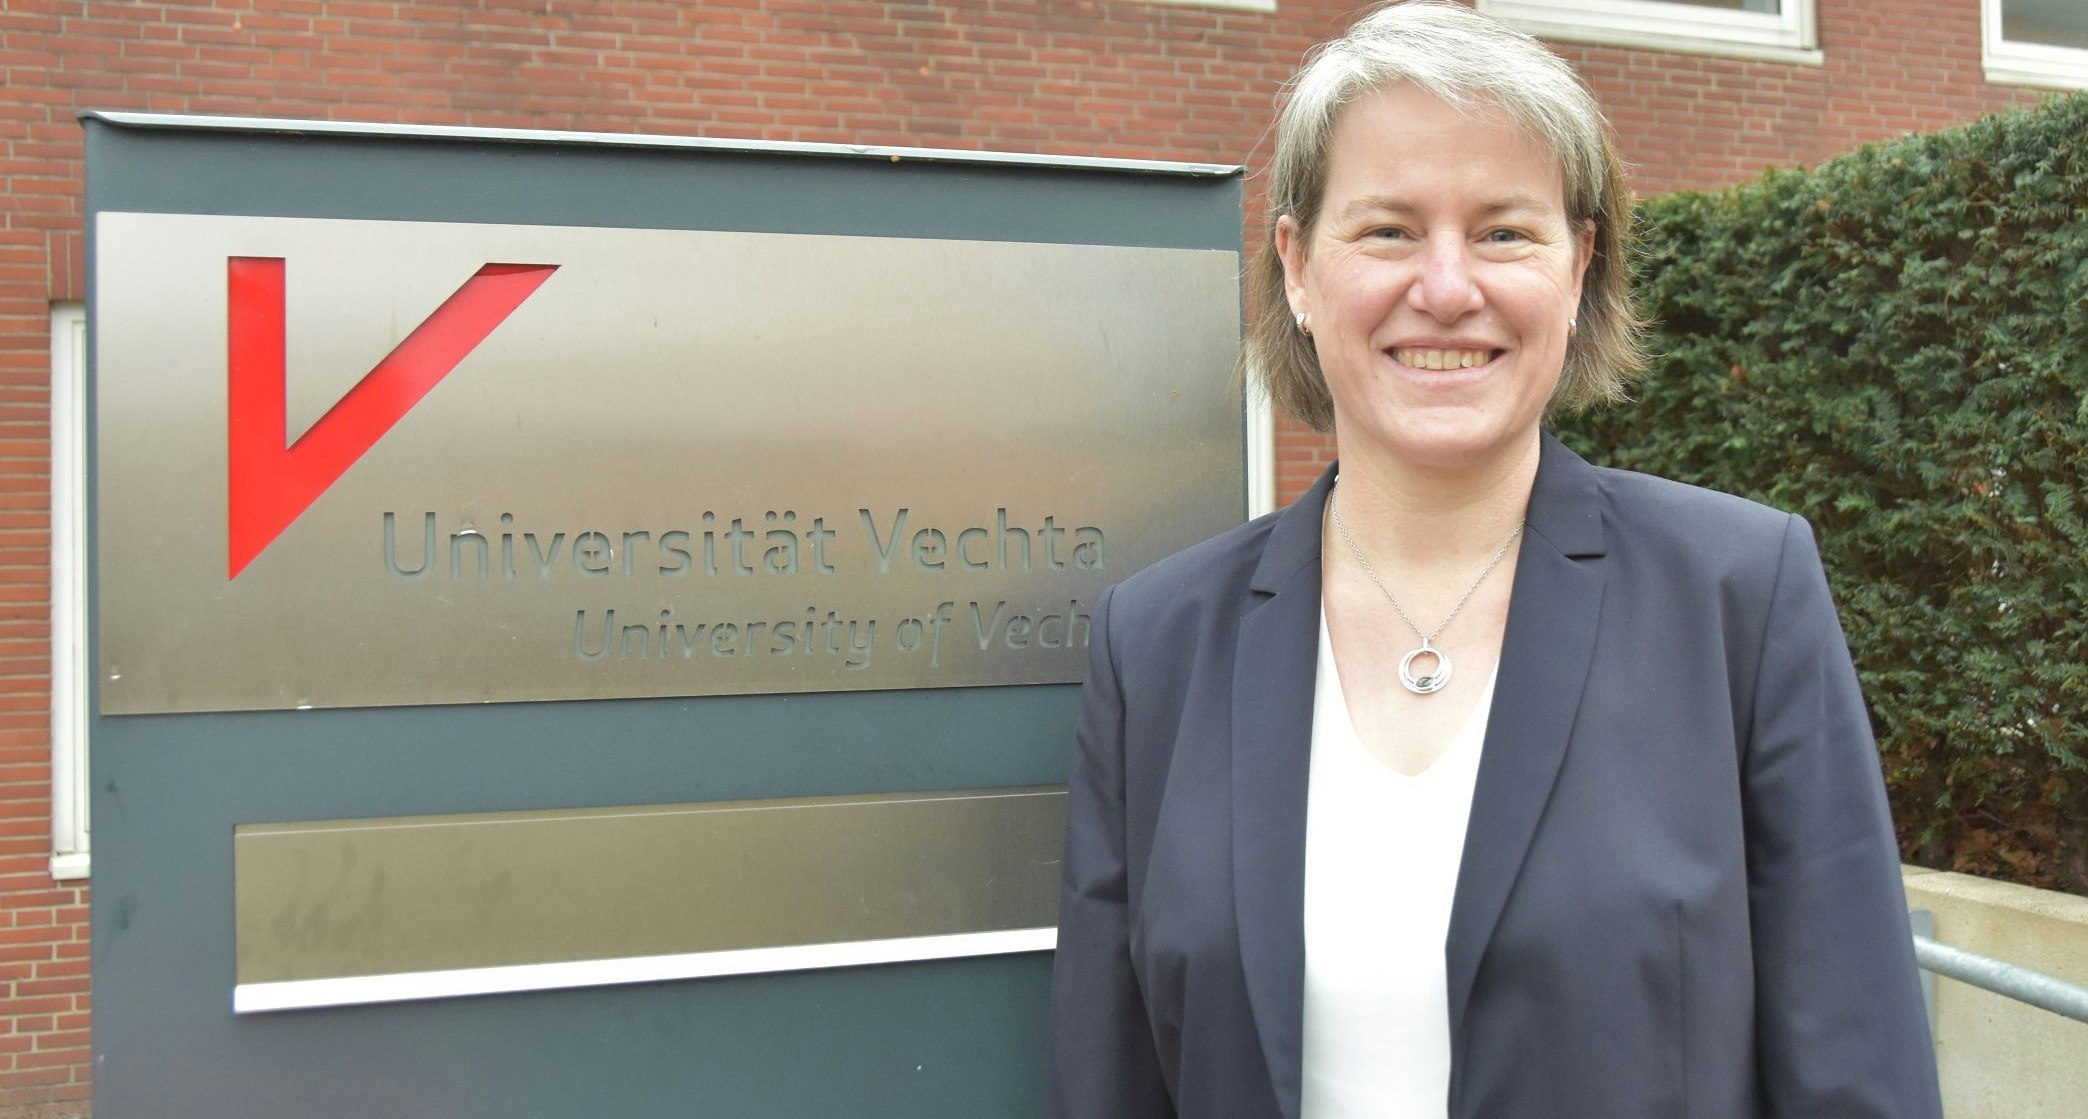 Setzt auf Kooperation: Professorin Dr. Verena Pietzner will die Universität Vechta vielfach weiterentwickeln. Foto: Tzimurtas